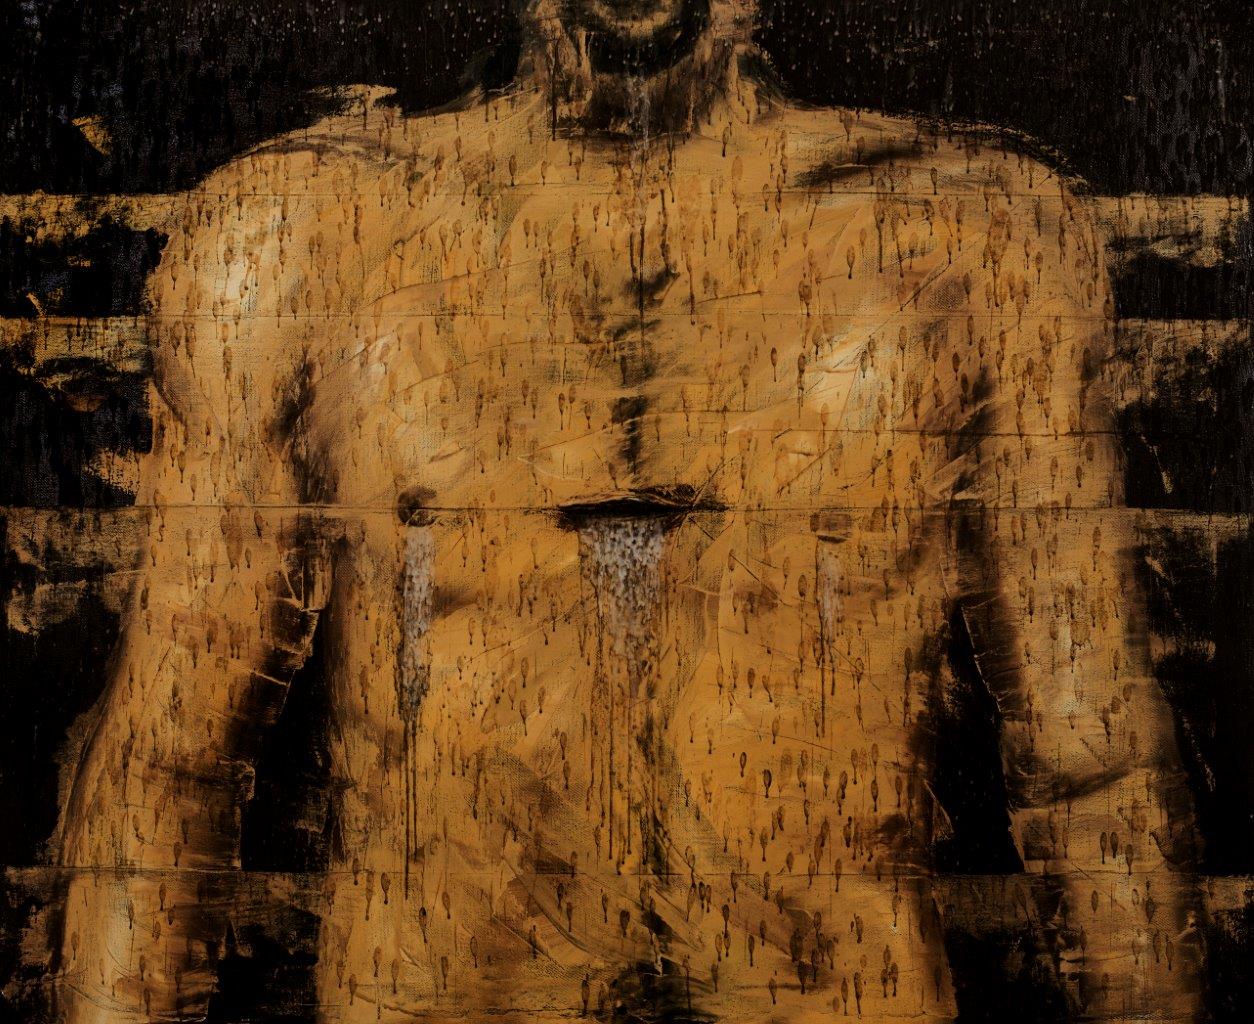 S/t., 2008. De la serie “Mapas del cuerpo”. Óleo, objetos y parafina sobre lienzo, 120 x 150 cm.
